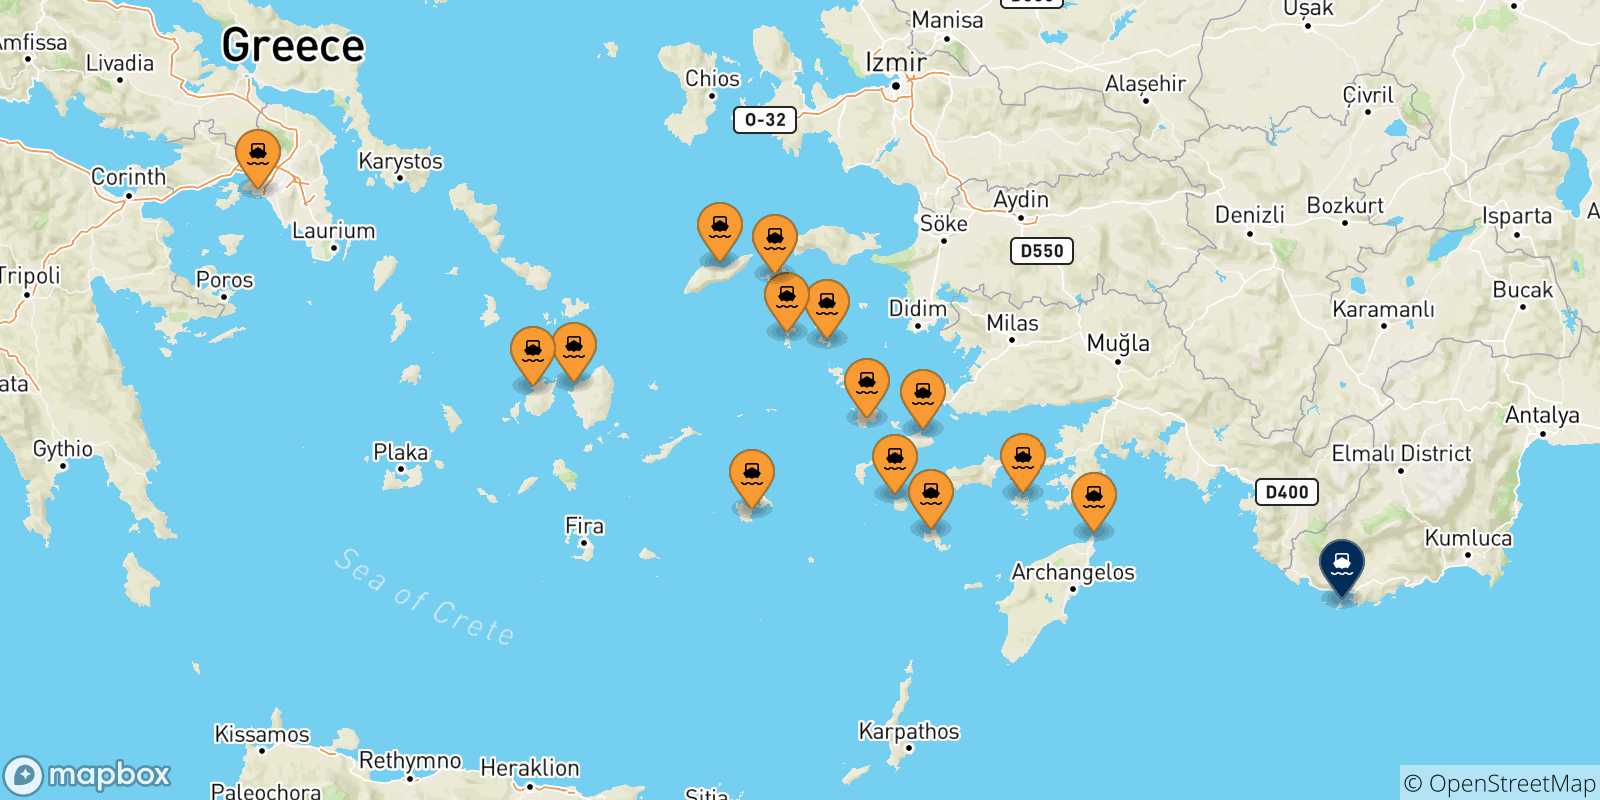 Mappa delle possibili rotte tra la Grecia e Kastellorizo